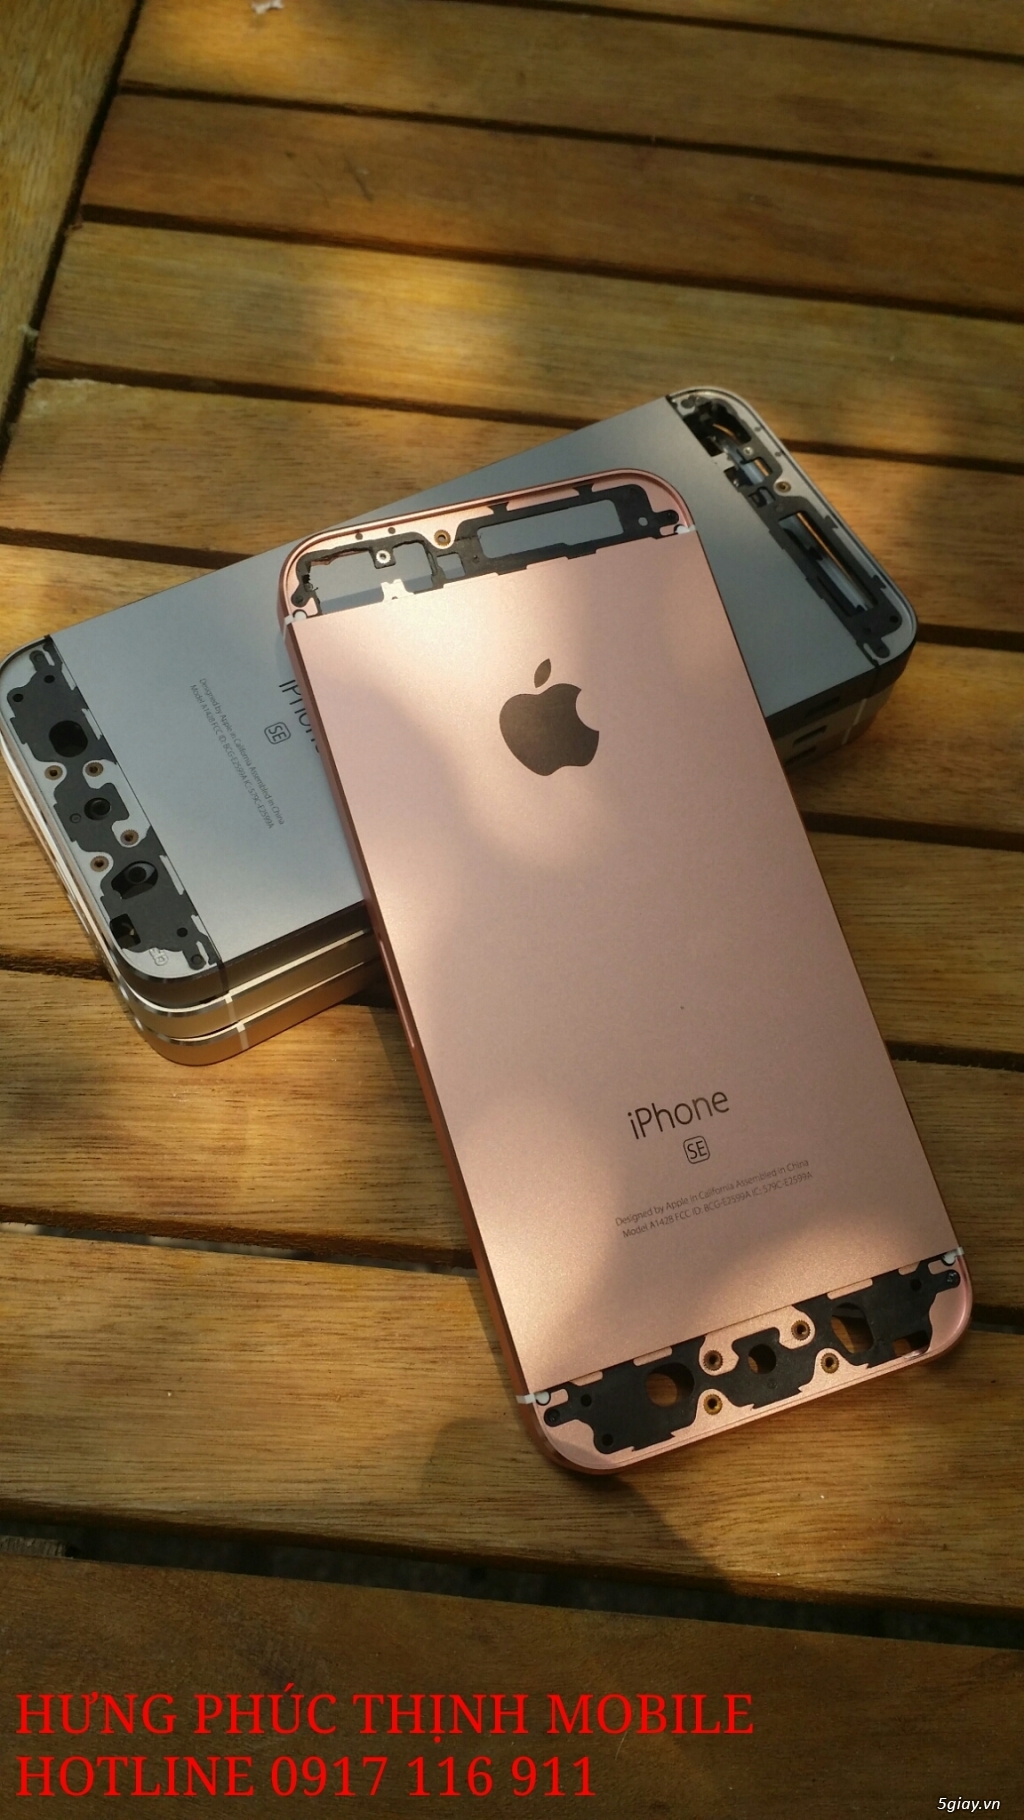 Iphone 6 gray 16gb dùng Sim ghép đã fix full lỗi - 7